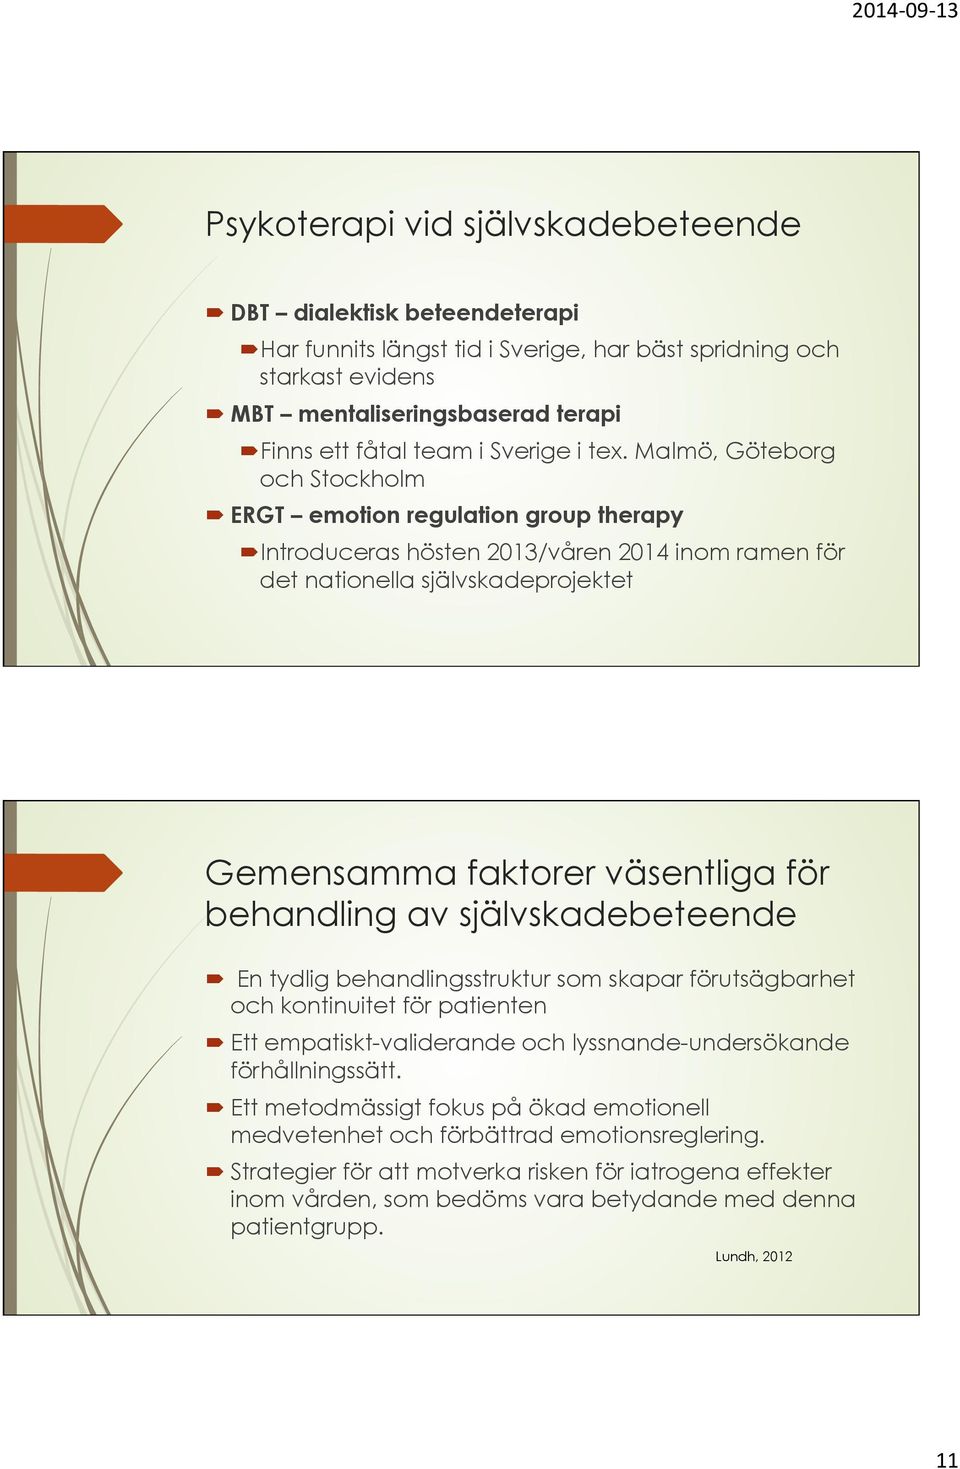 Malmö, Göteborg och Stockholm ERGT emotion regulation group therapy Introduceras hösten 2013/våren 2014 inom ramen för det nationella självskadeprojektet Gemensamma faktorer väsentliga för behandling